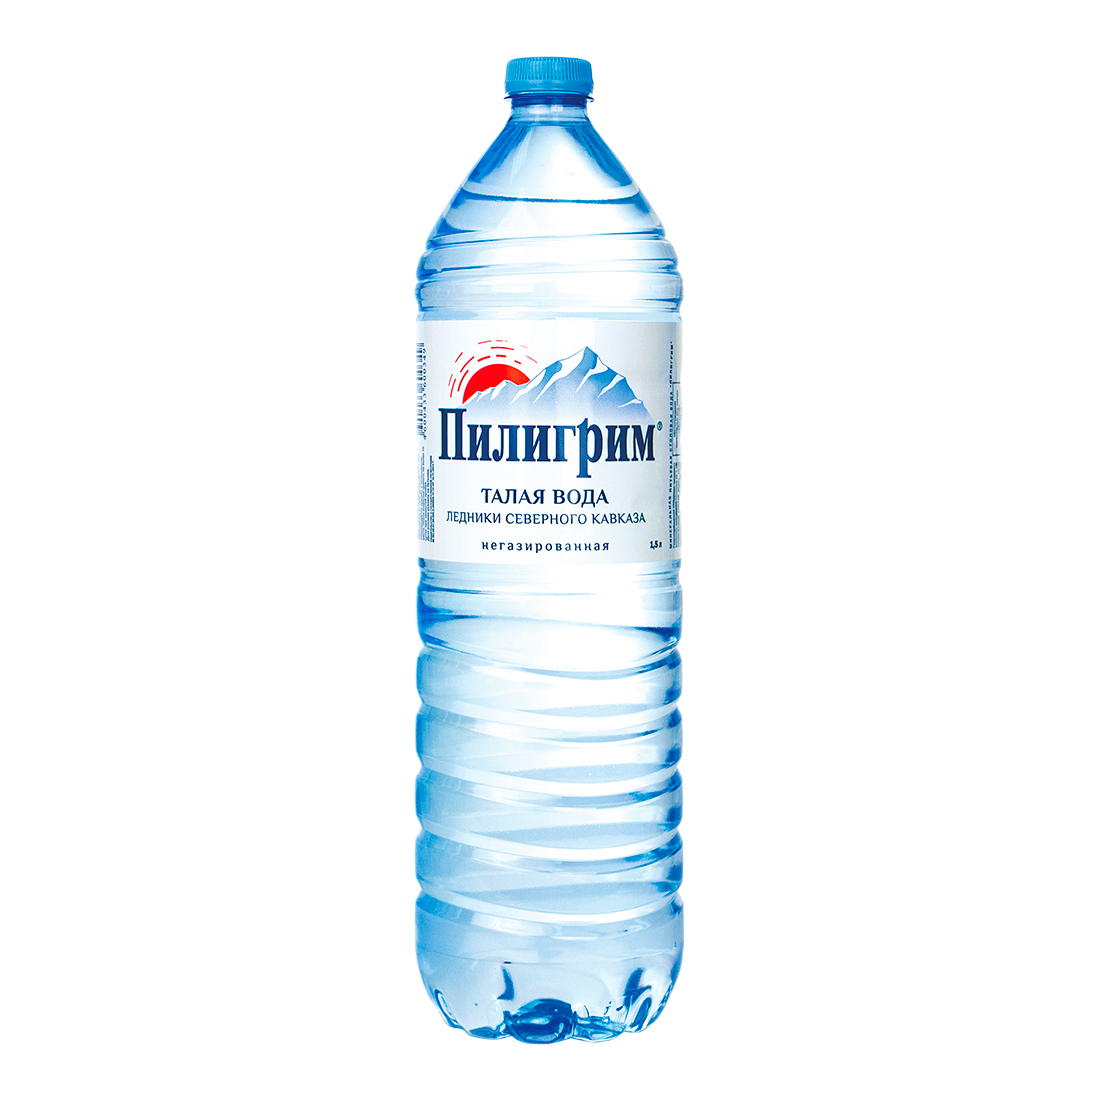 Пилигрим - вода Минеральная природная столовая питьевая 1.5 литра, без газа, пэт, 6 шт. в уп. - 1